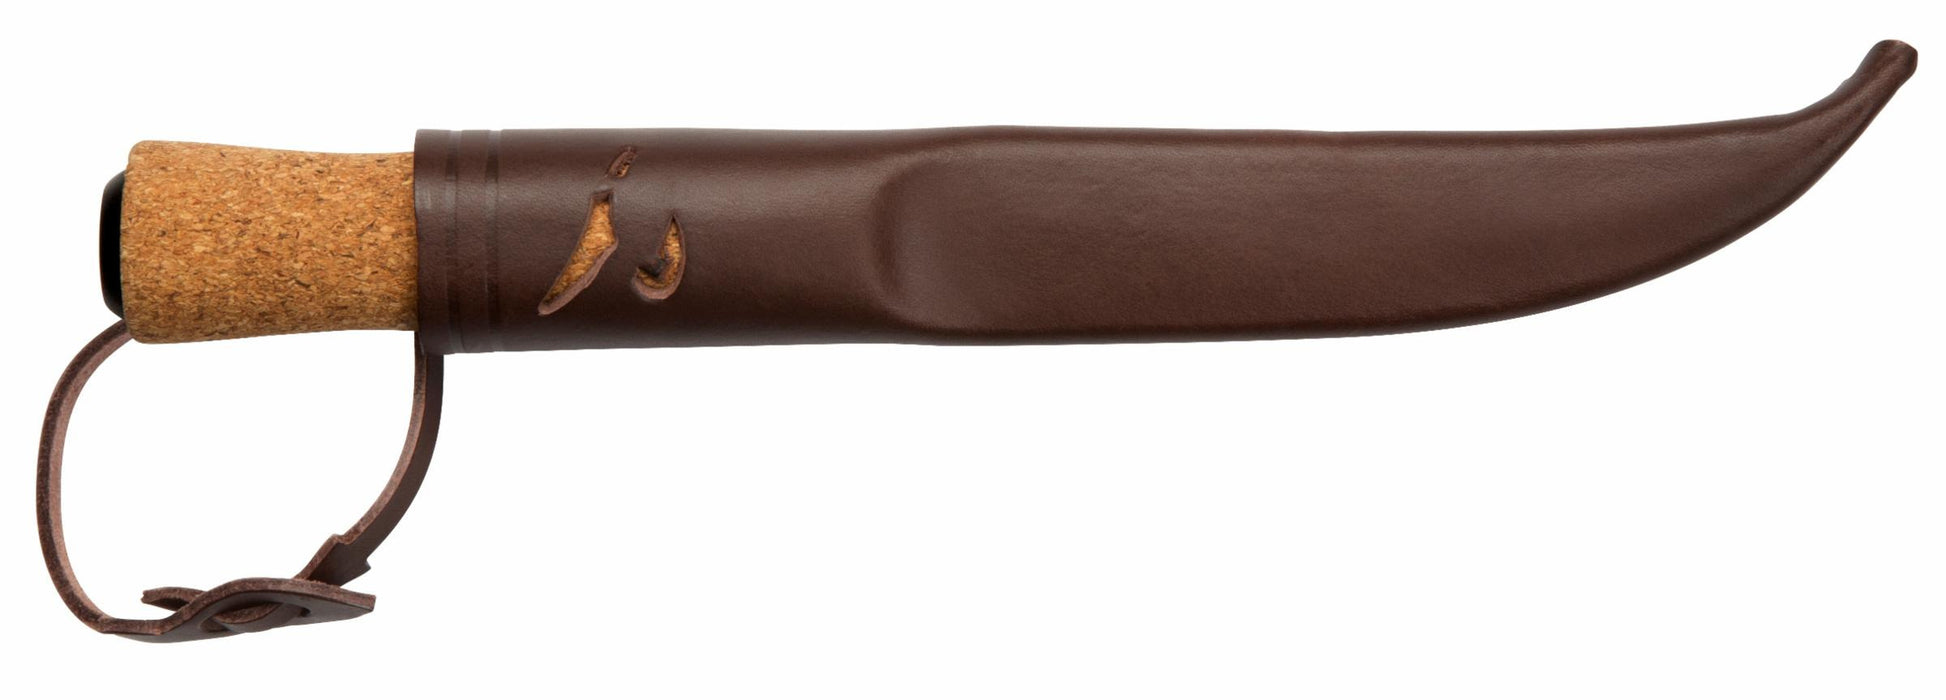 Helle Hellefisk Fishing Outdoor Knife Cork Handle In Sheath